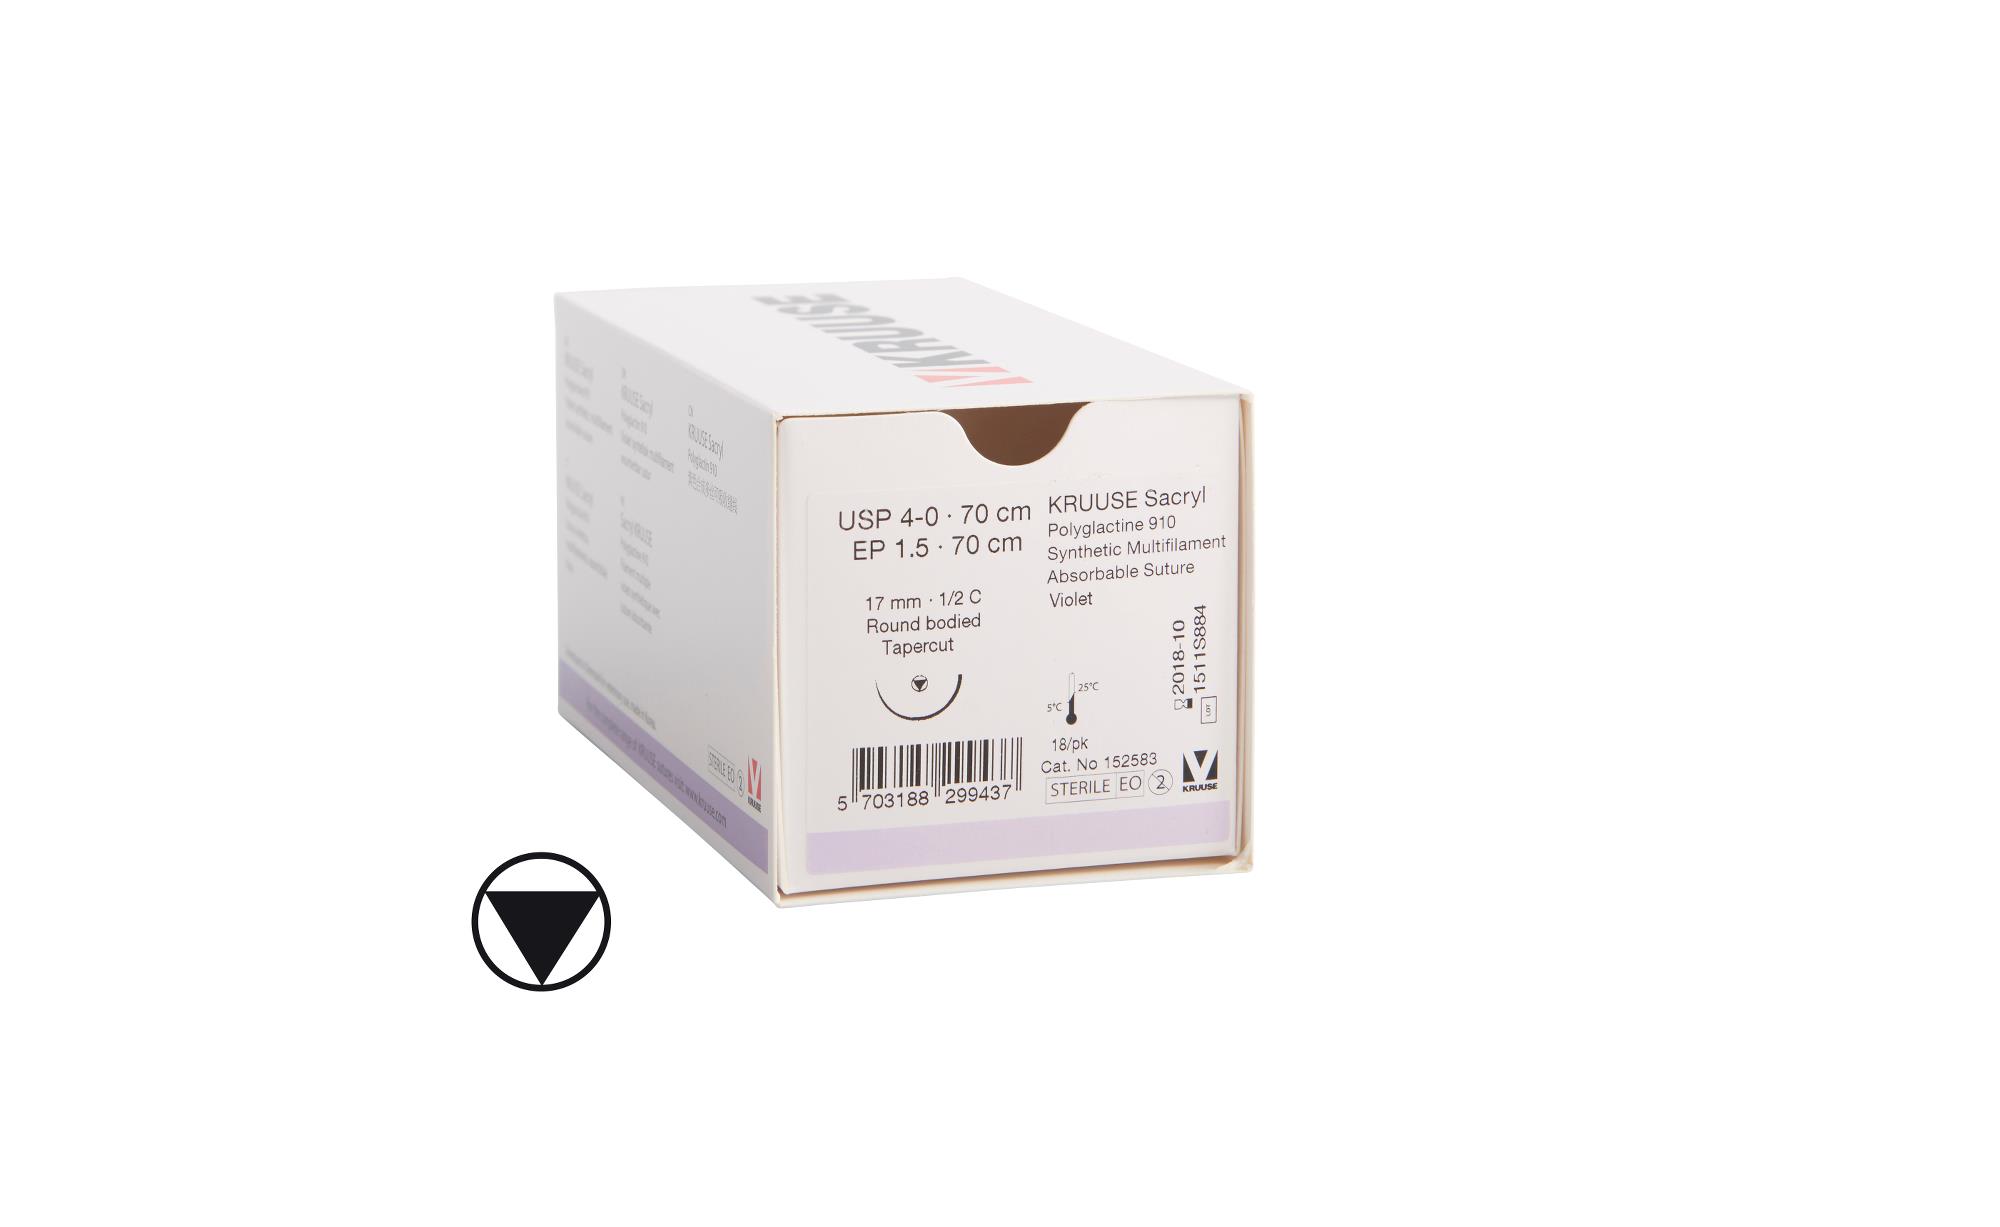 KRUUSE Sacryl Suture, USP 4-0, 70 cm, violet, 17 mm needle, ½ C, RB, tapercut, 18/pk